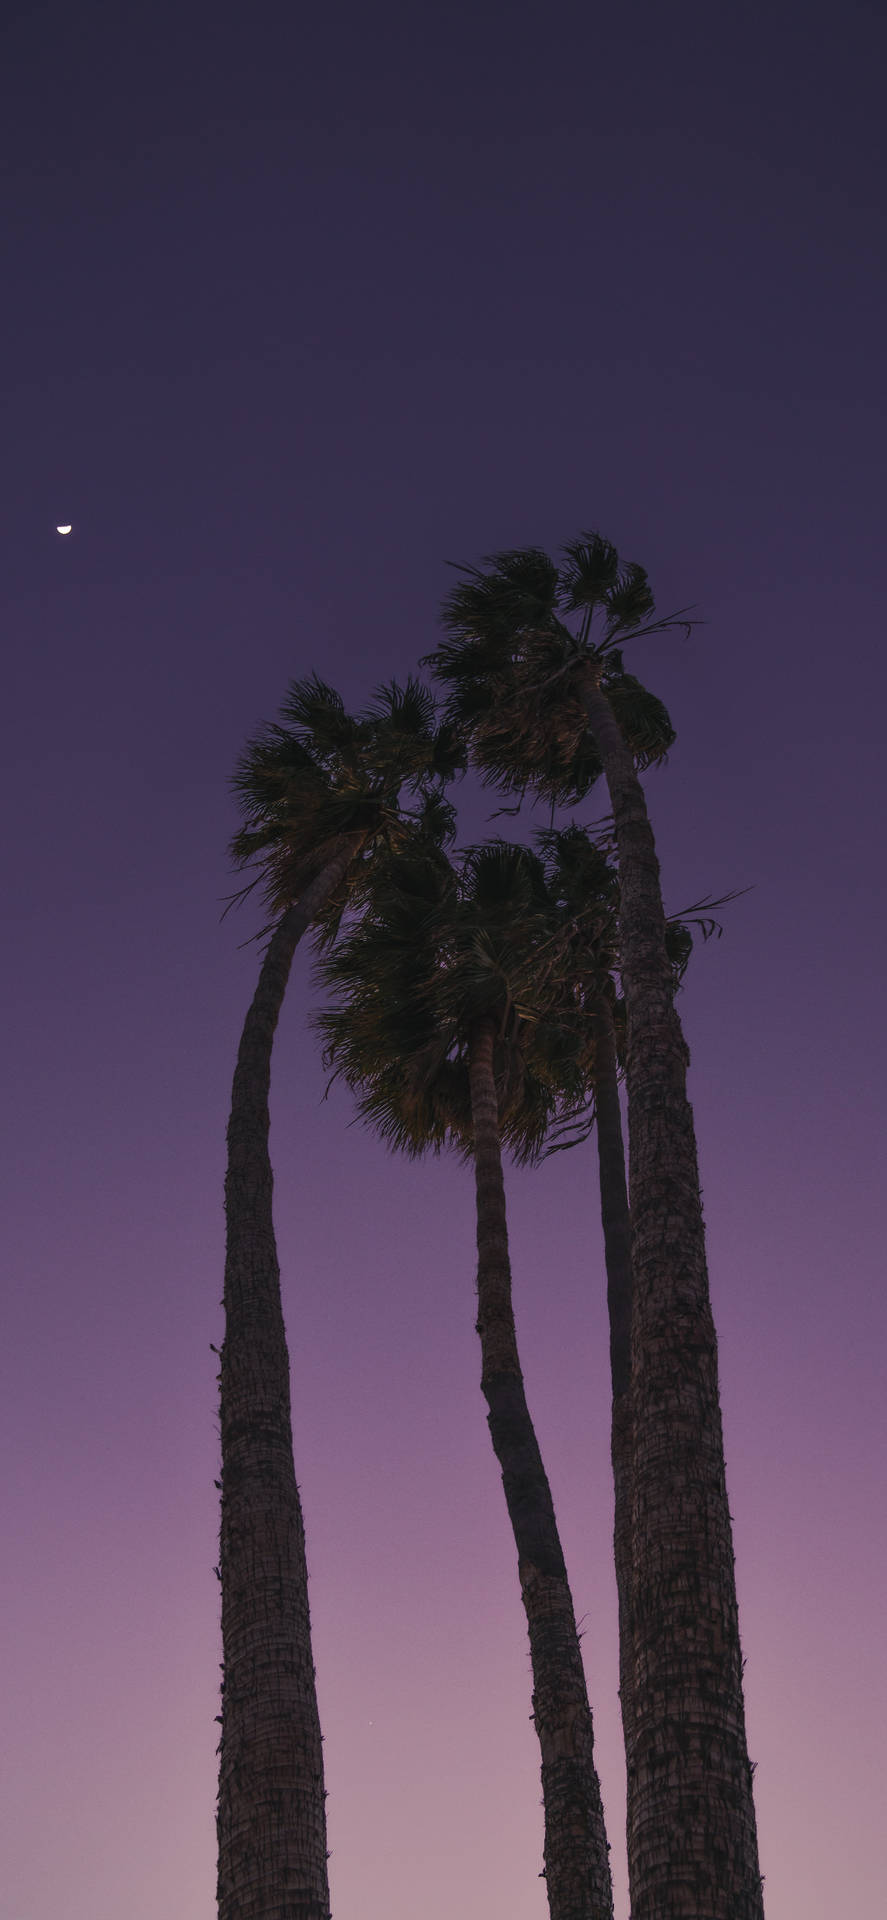 Palm Trees Dark Purple Sky